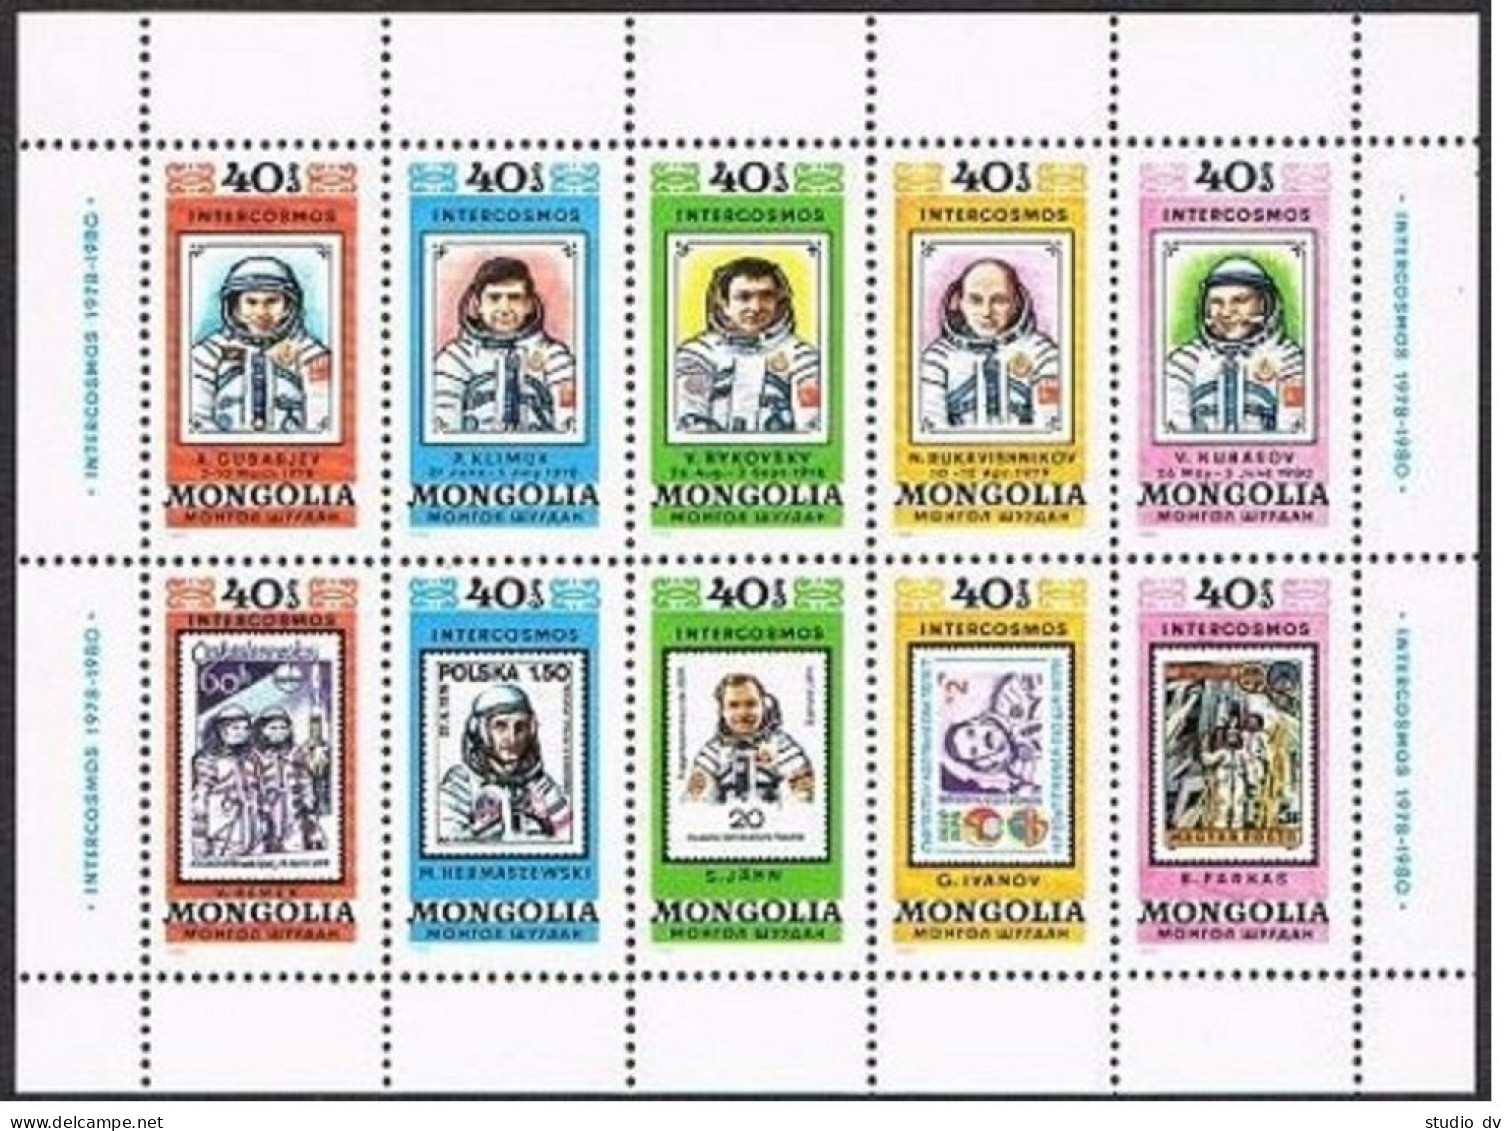 Mongolia 1128 Sheet,MNH. Mi 1318-1327. Cosmonauts From INTERCOSMOS Flights,1980. - Mongolei